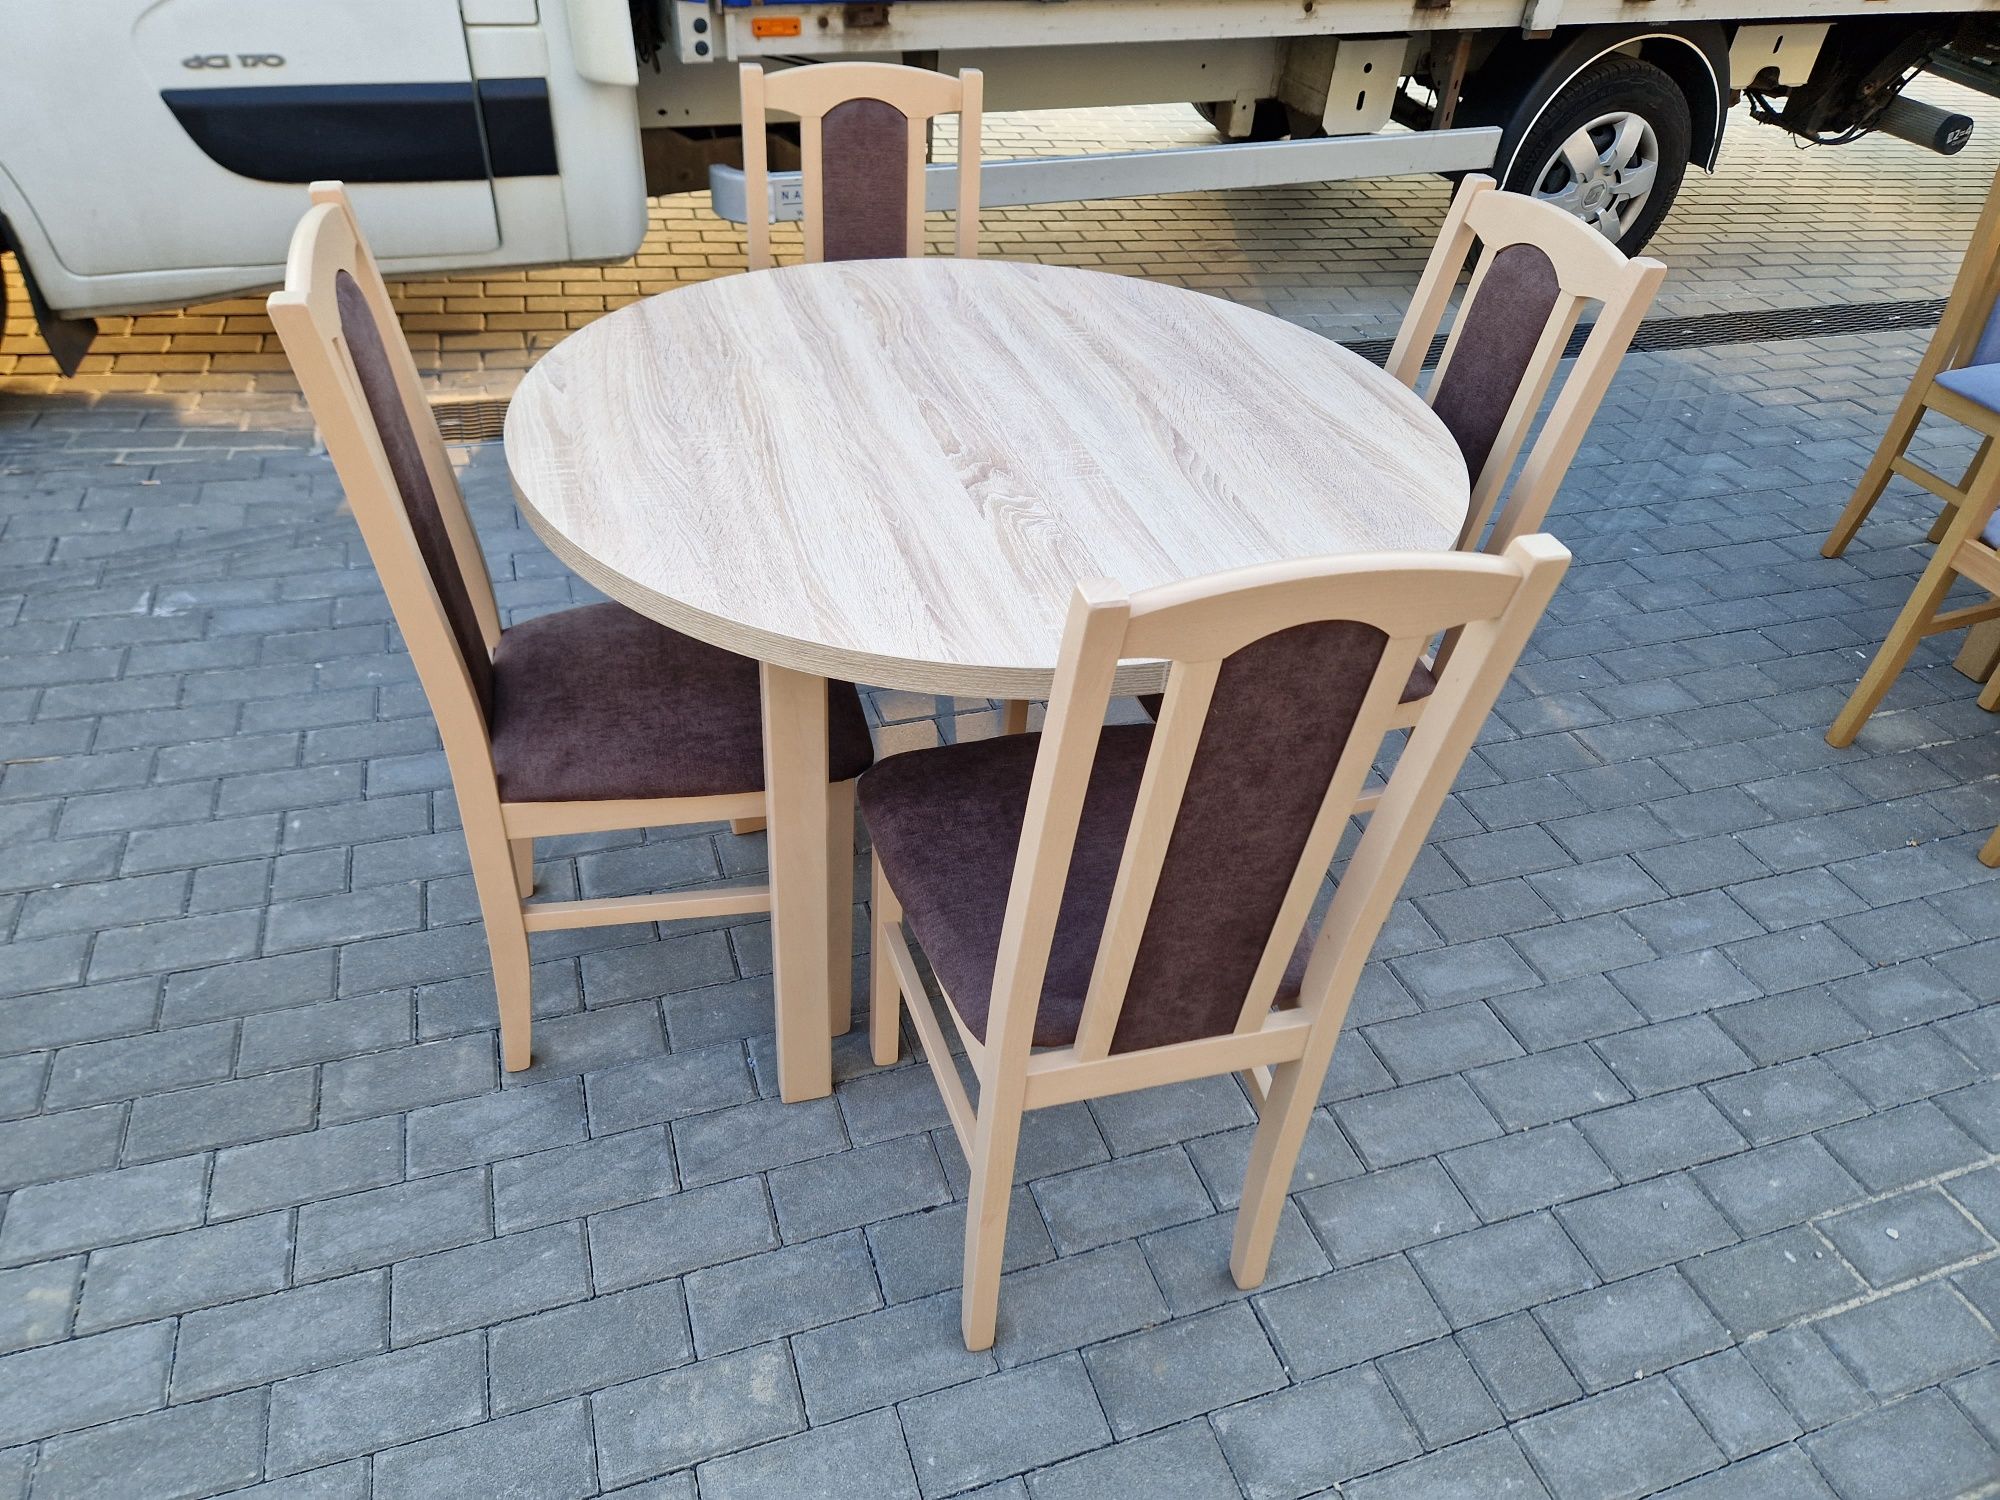 Nowe: Stół okrągły rozkładany + 4 krzesła, sonoma + brąz,  dostawa PL